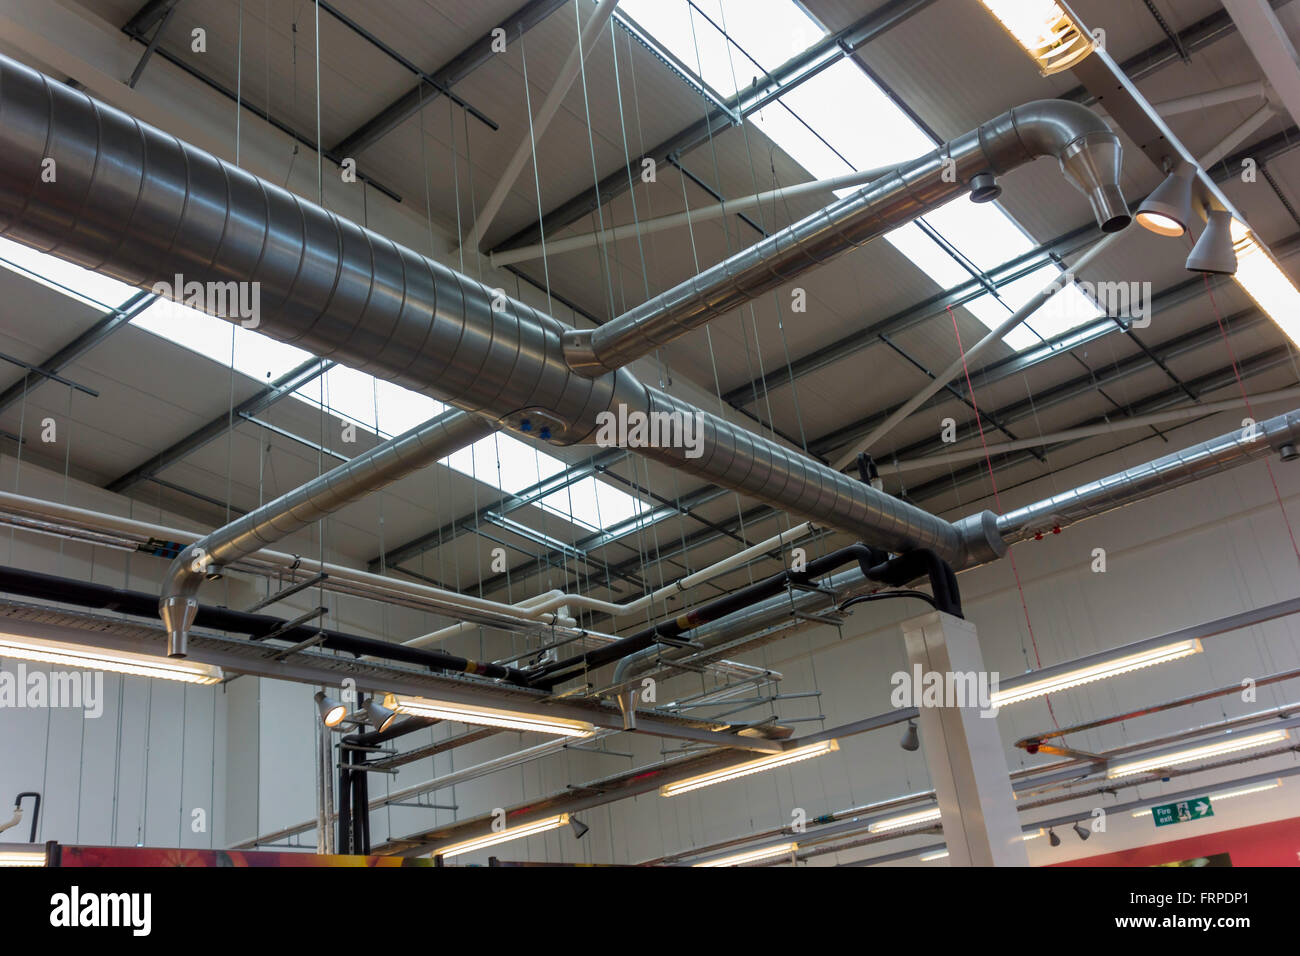 Heizung Lüftung und elektrische Leistungen von Dachkonstruktion in einem Supermarkt den freien Zugang für Stock Spac bieten ausgesetzt Stockfoto